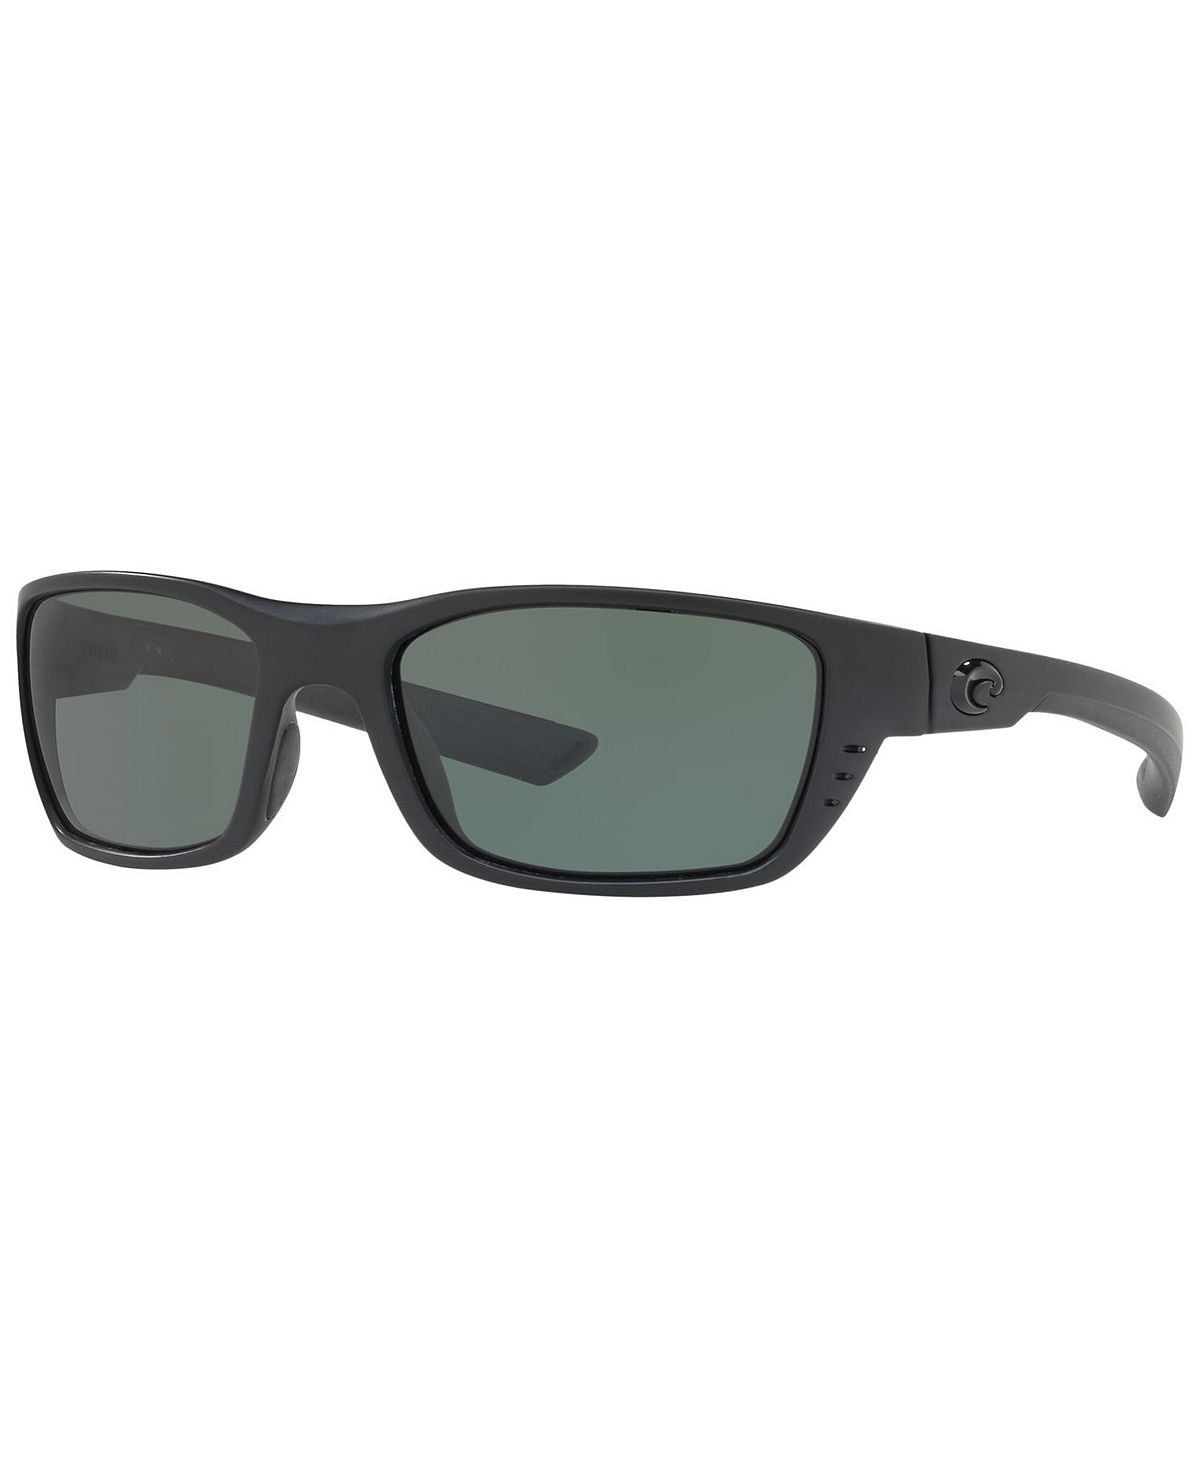 Поляризационные солнцезащитные очки, WHITETIP 58 Costa Del Mar